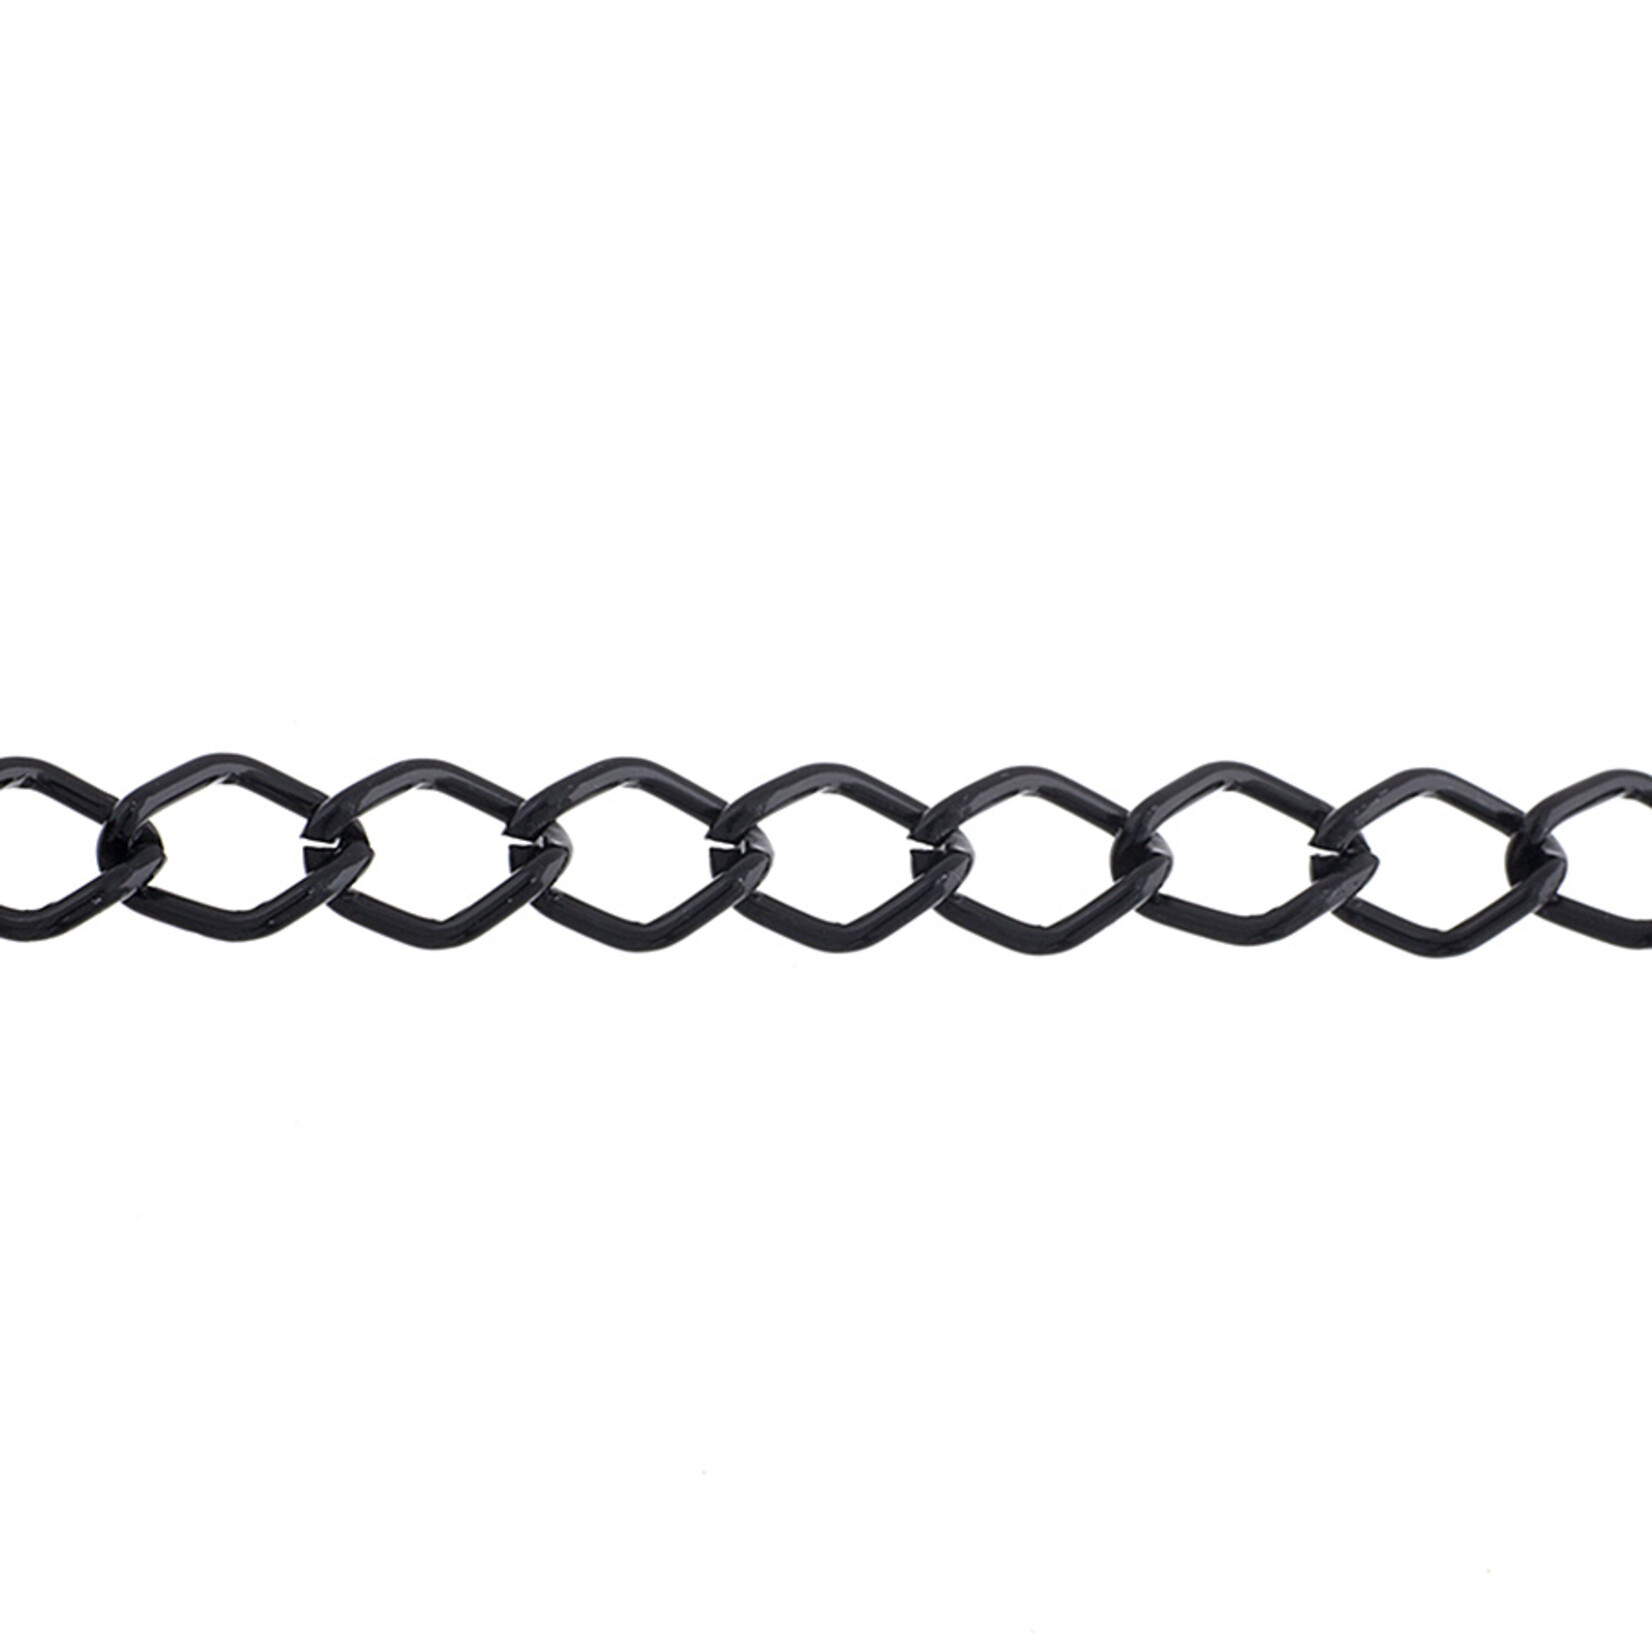 Aluminum Chain 50m/spool Black 11 x 8mm